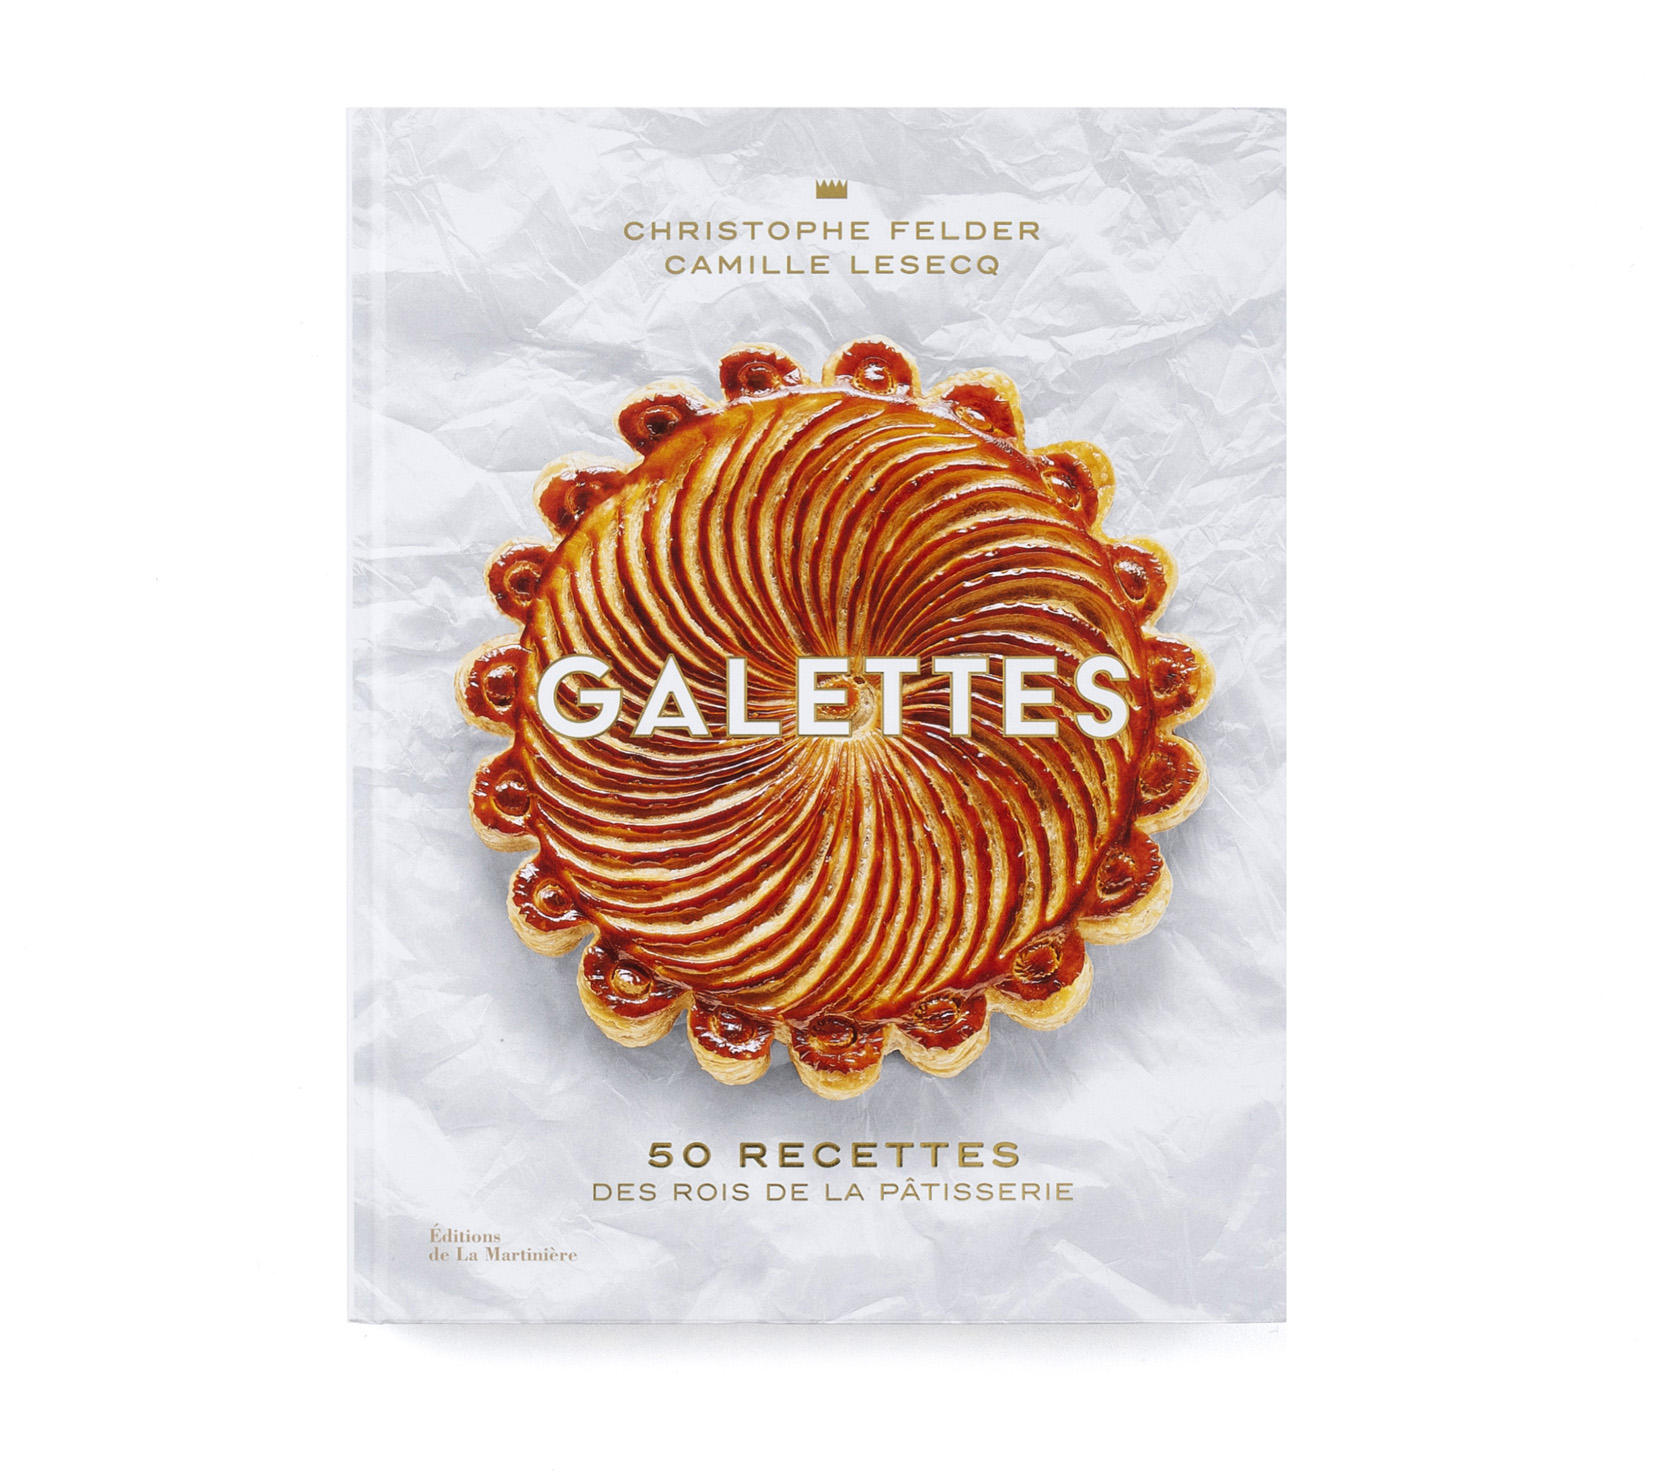   GALETTES  50 recettes des rois de la pâtisserie  Éditions de La Martinière  238 pages 